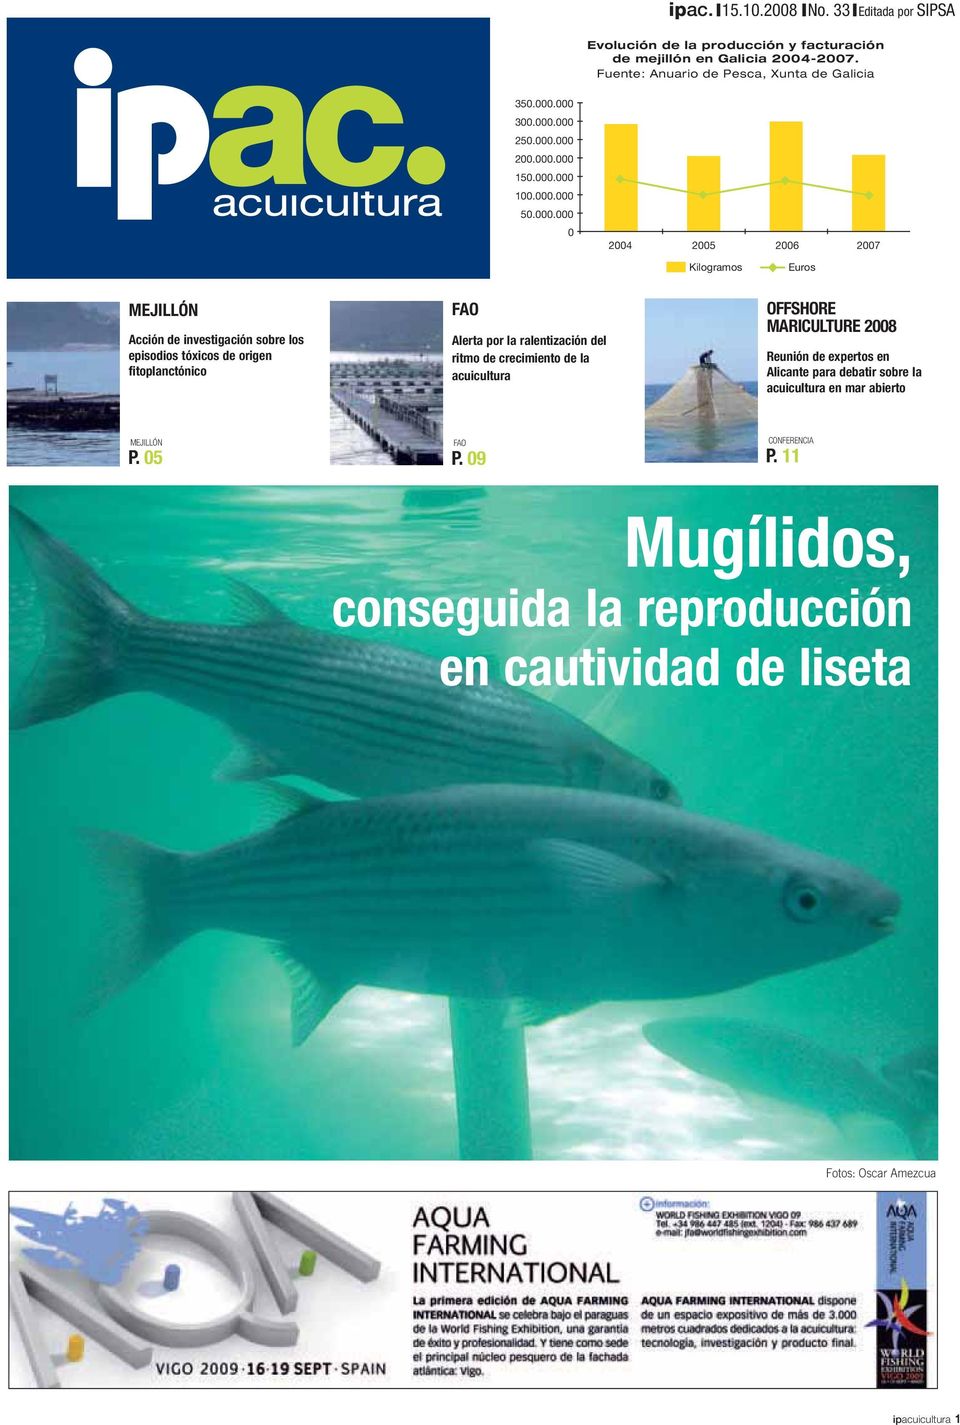 tóxicos de origen fitoplanctónico FAO Alerta por la ralentización del ritmo de crecimiento de la acuicultura OFFSHORE MARICULTURE 2008 Reunión de expertos en Alicante para